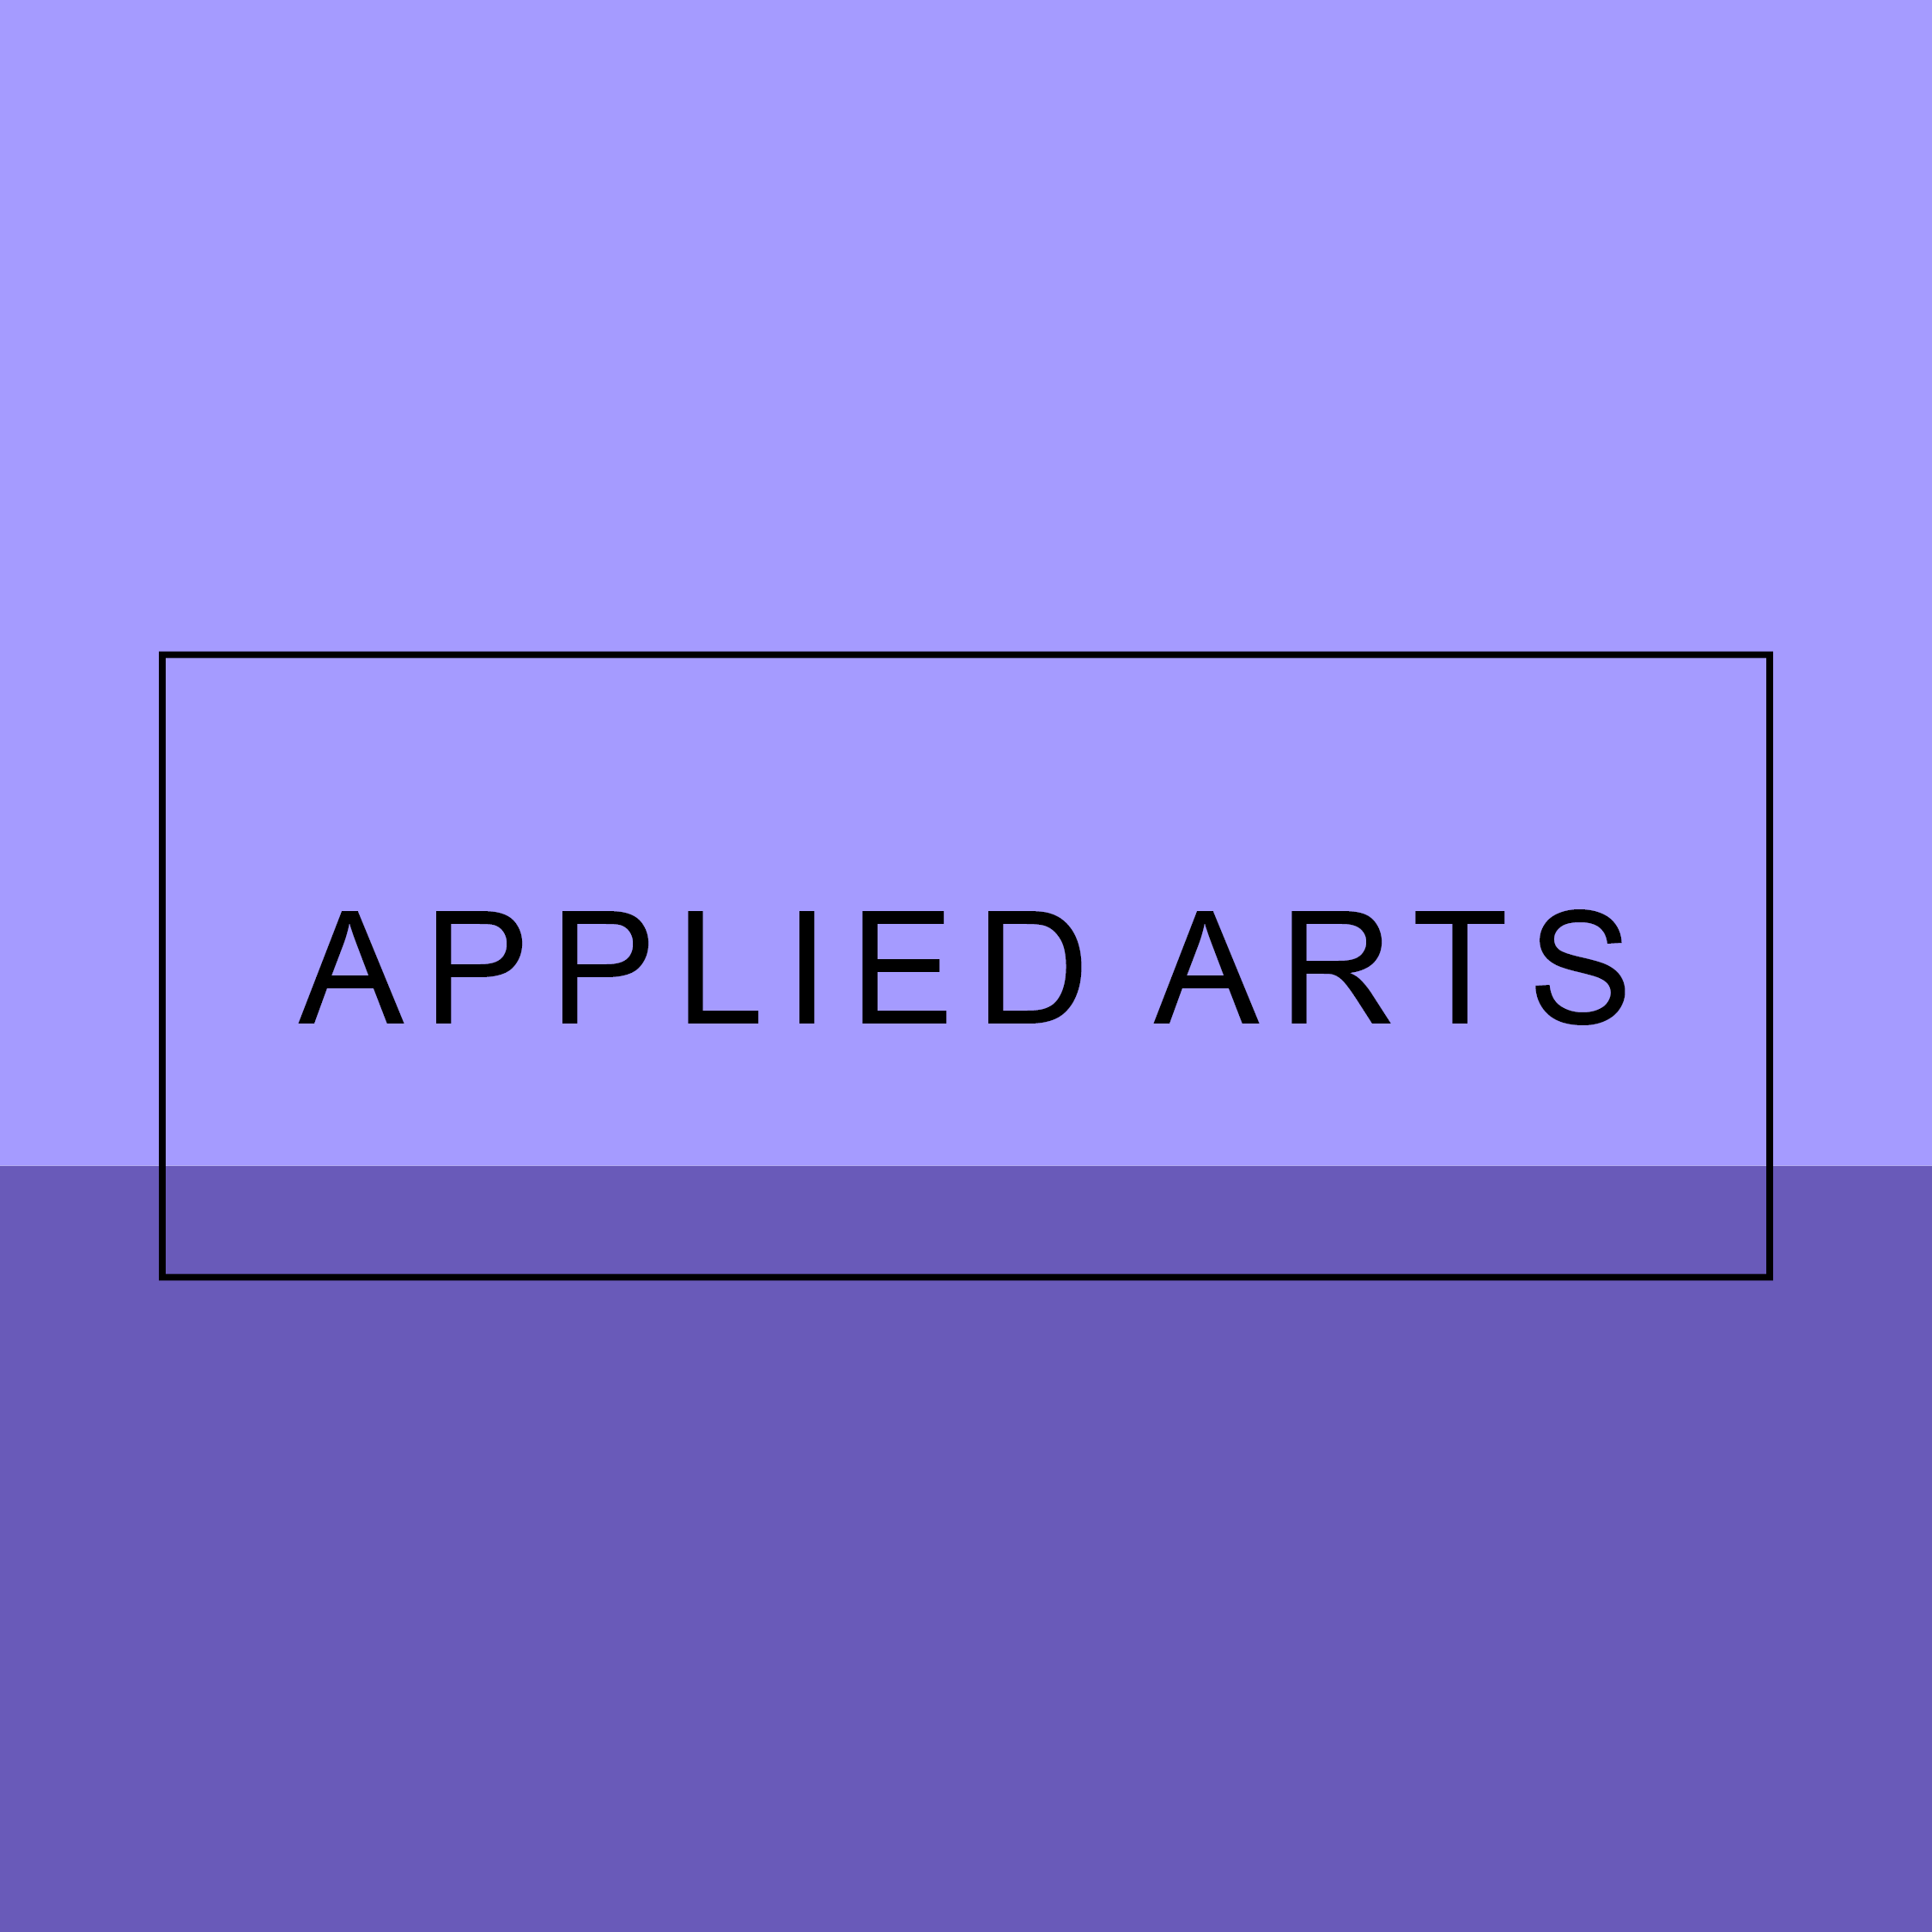 Applied Arts